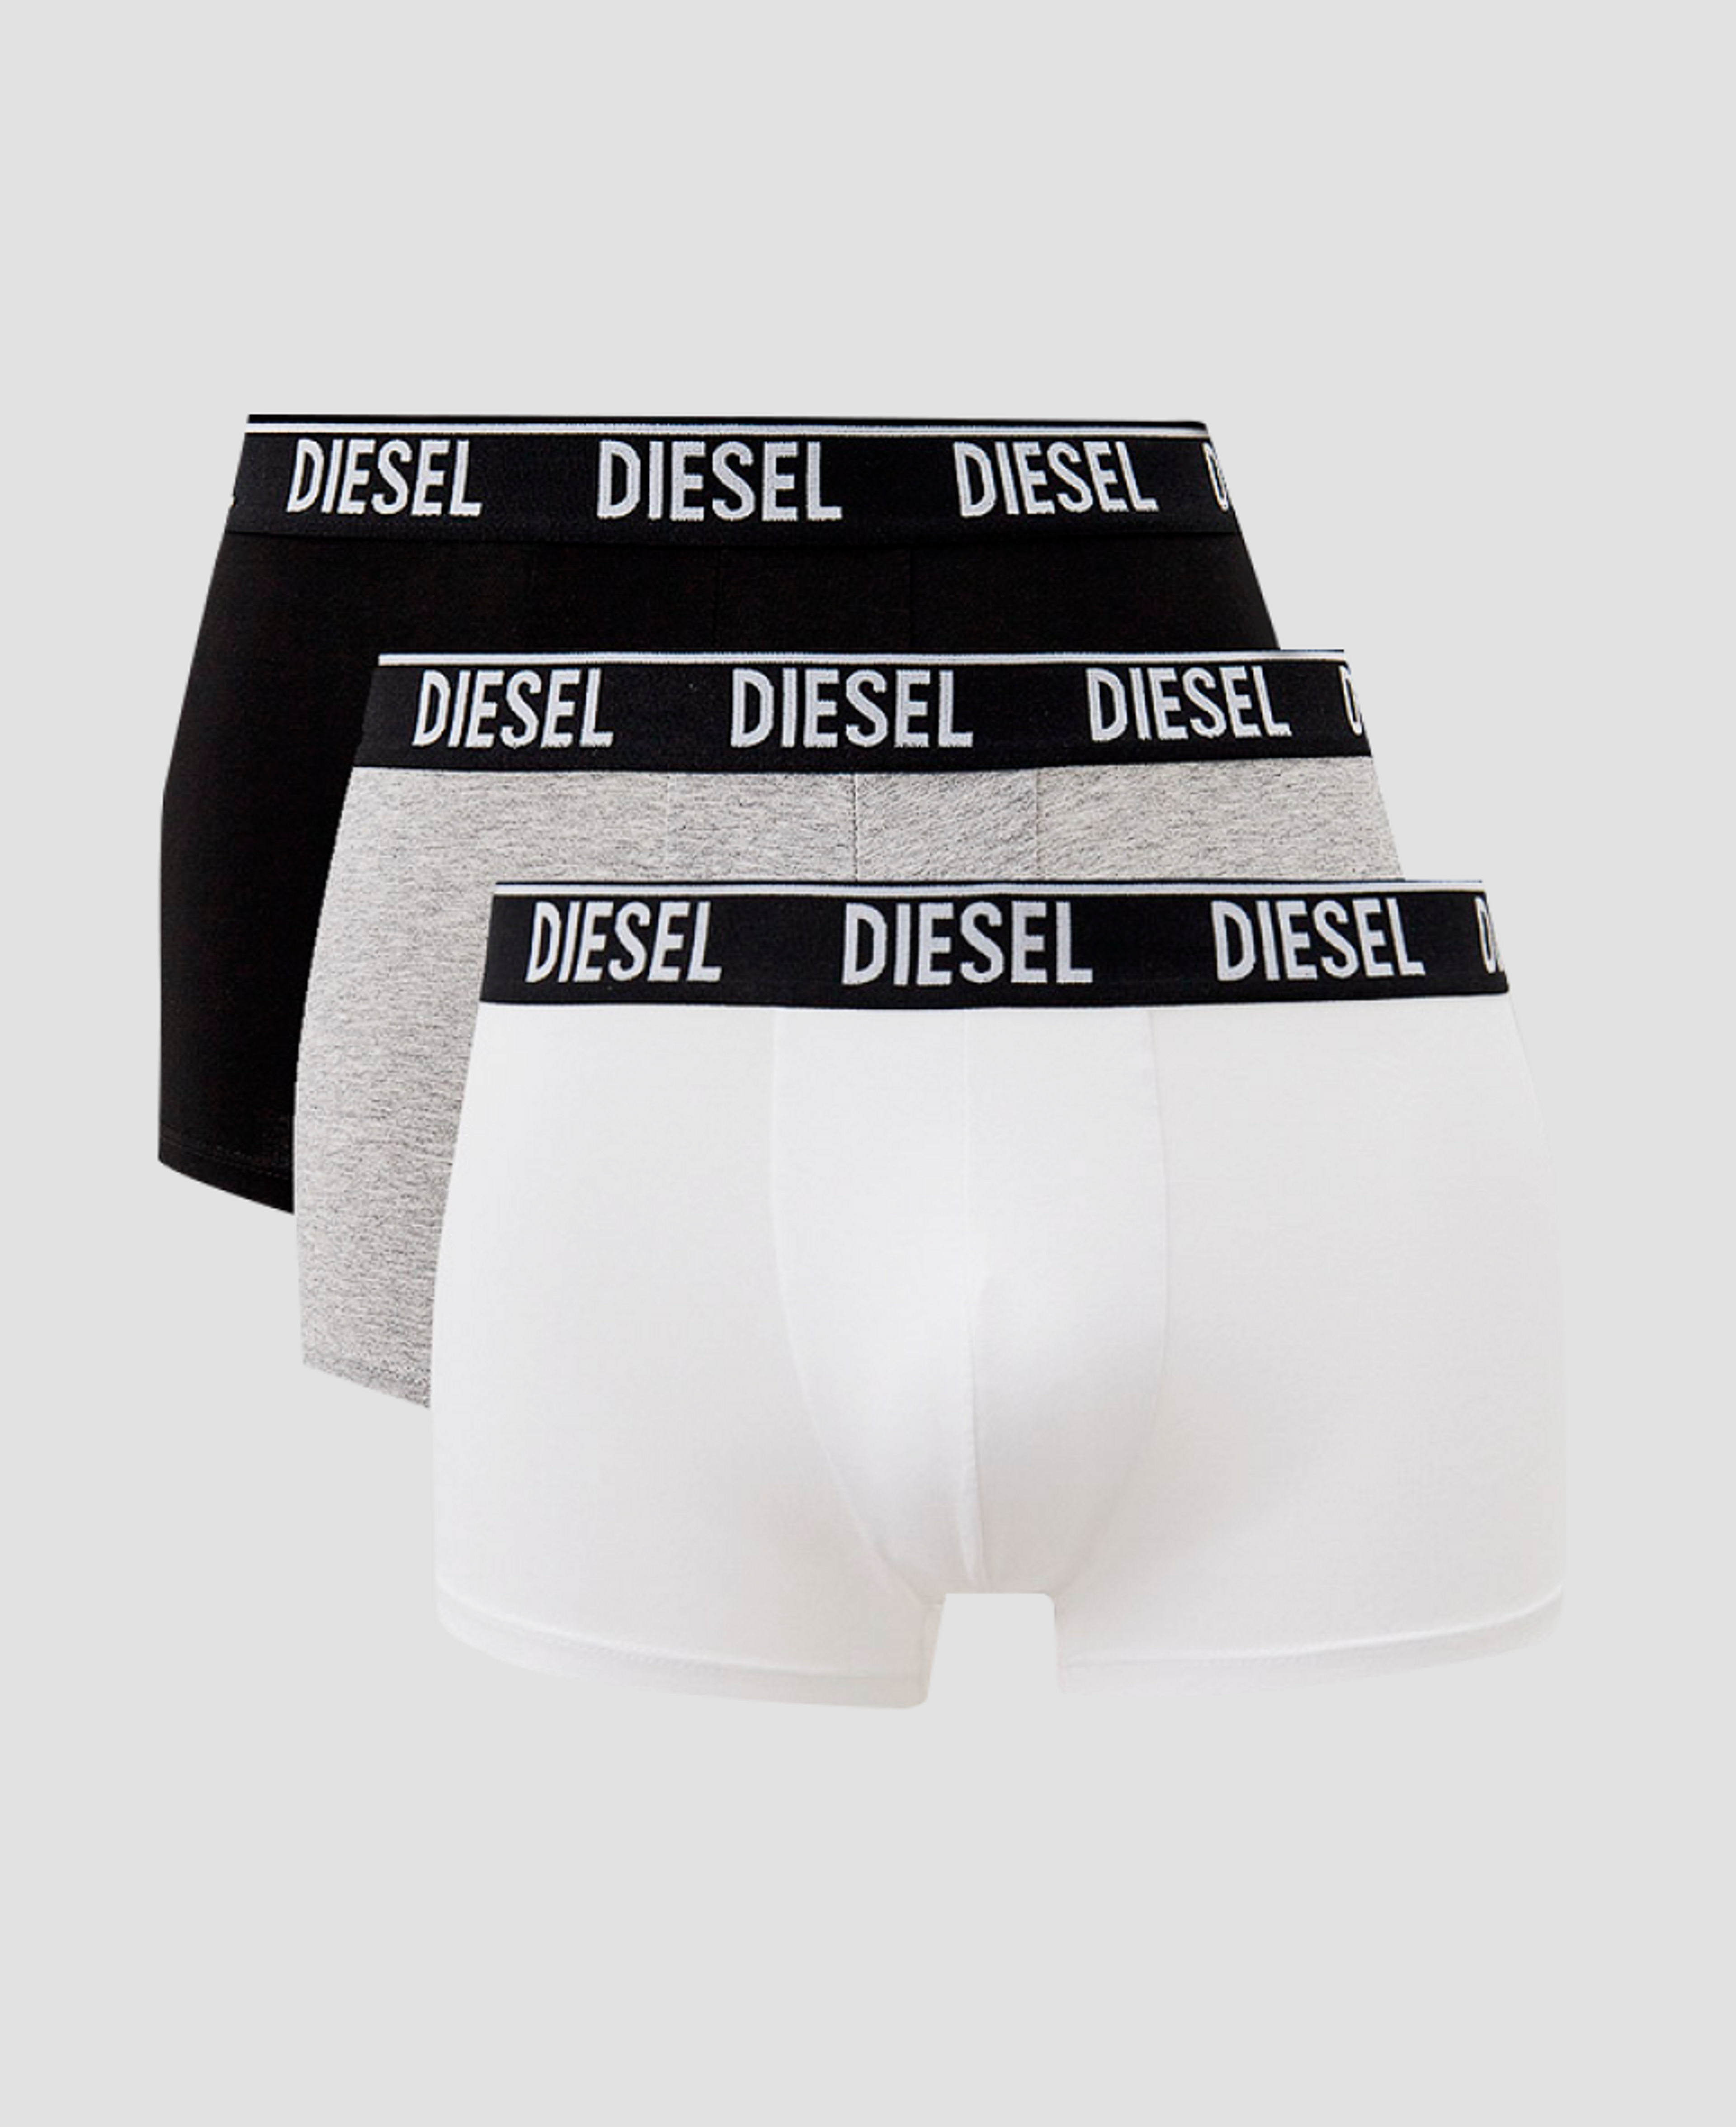 Комплект трусов Diesel